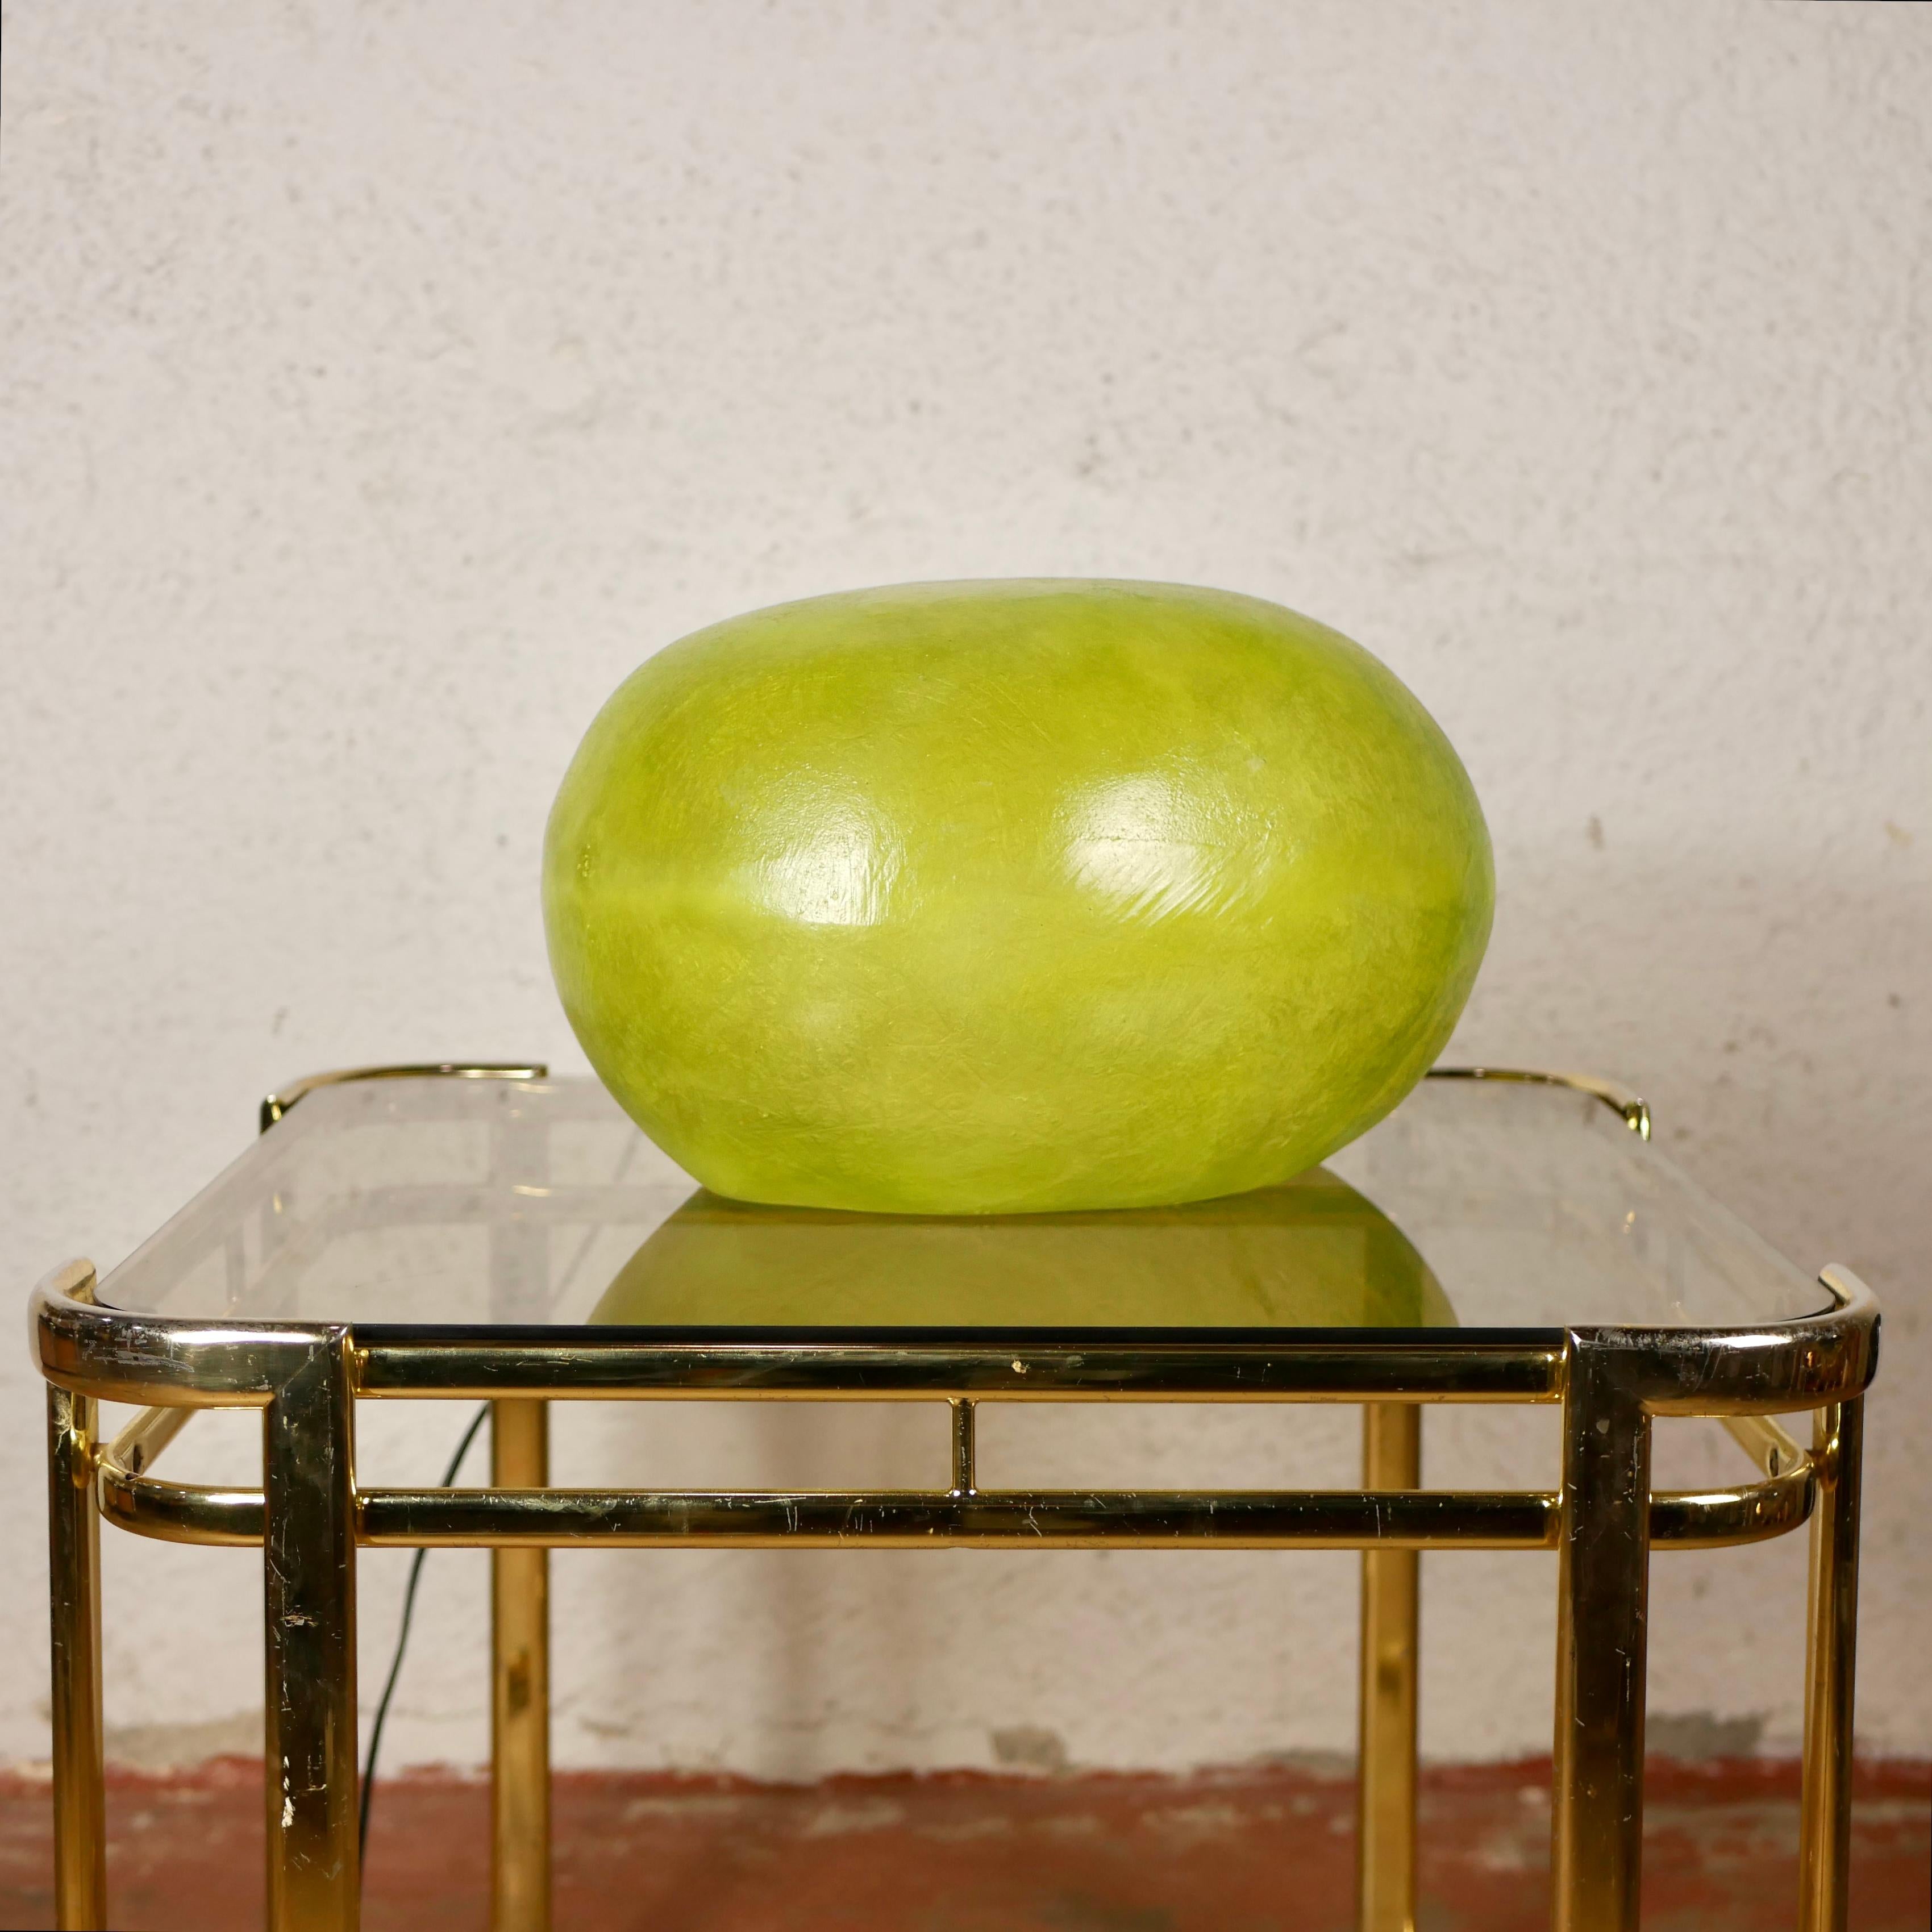 Jolie lampe en forme de galet ou d'oeuf en fibre de verre et résine, dans le style d'André Cazenave et de sa lampe Dora. Fabriqué dans les années 1980.
Couleur verte, en excellent état.